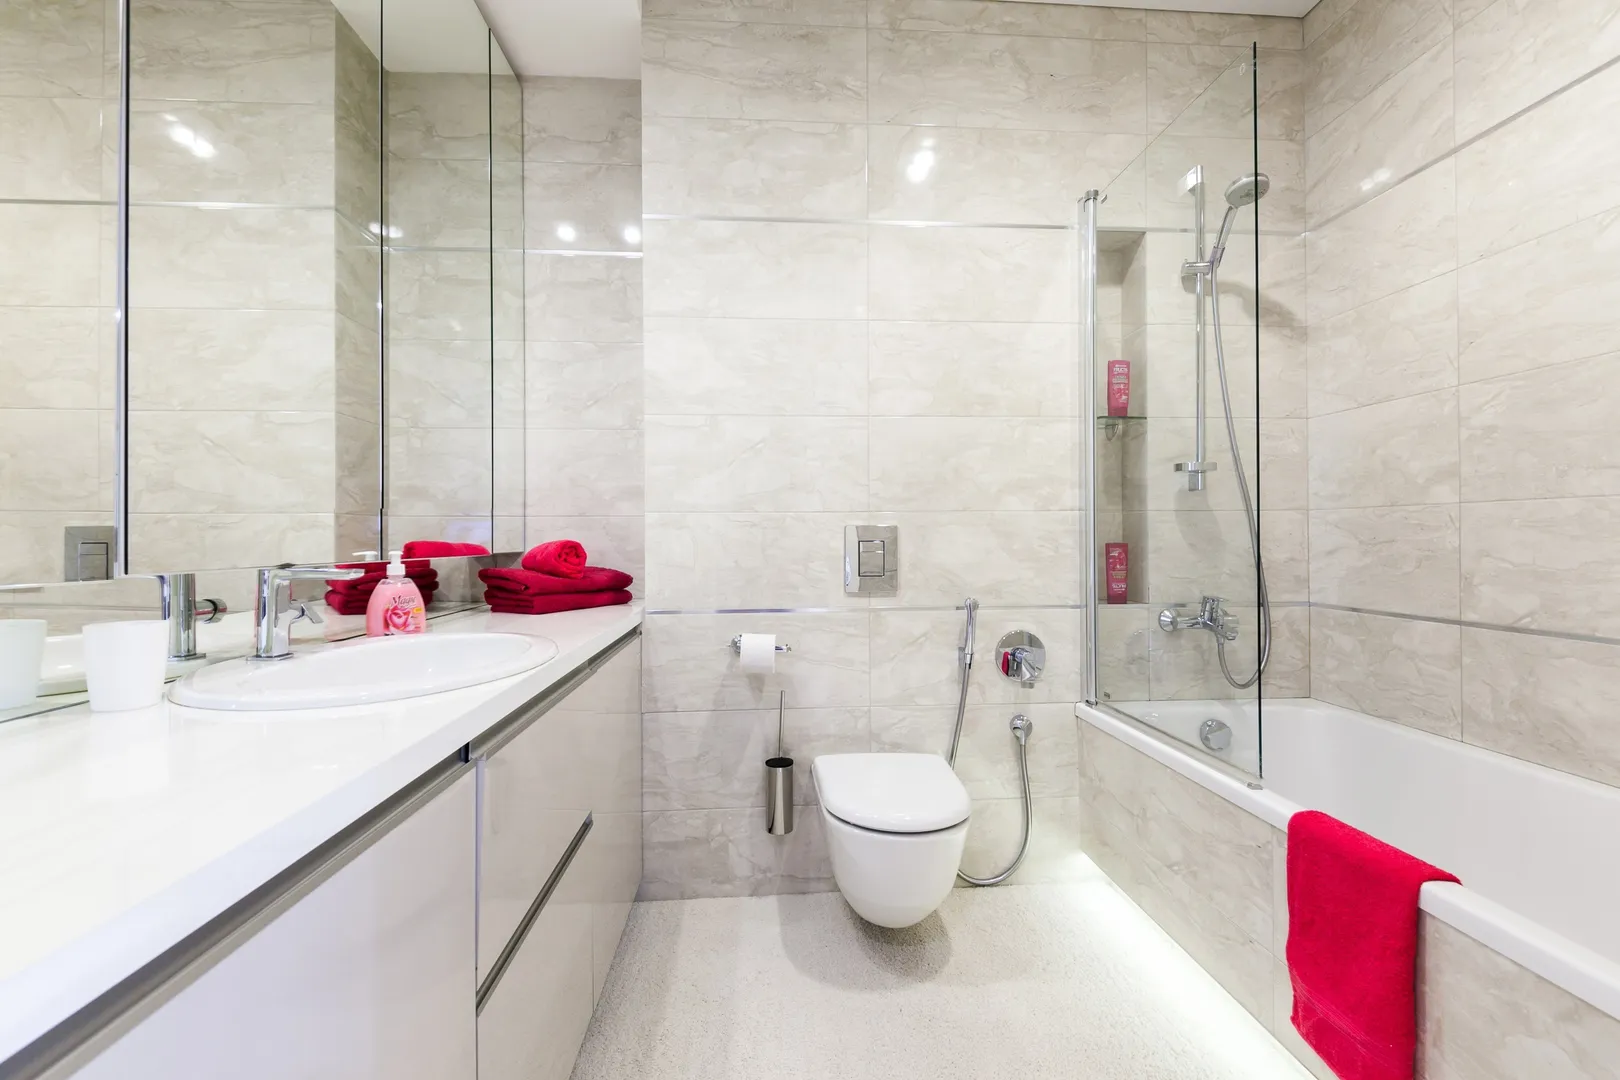 Ванная комната оснащена всеми необходимыми мелочами (Жидкое мыло, шампунь, гель душ, полотенца)